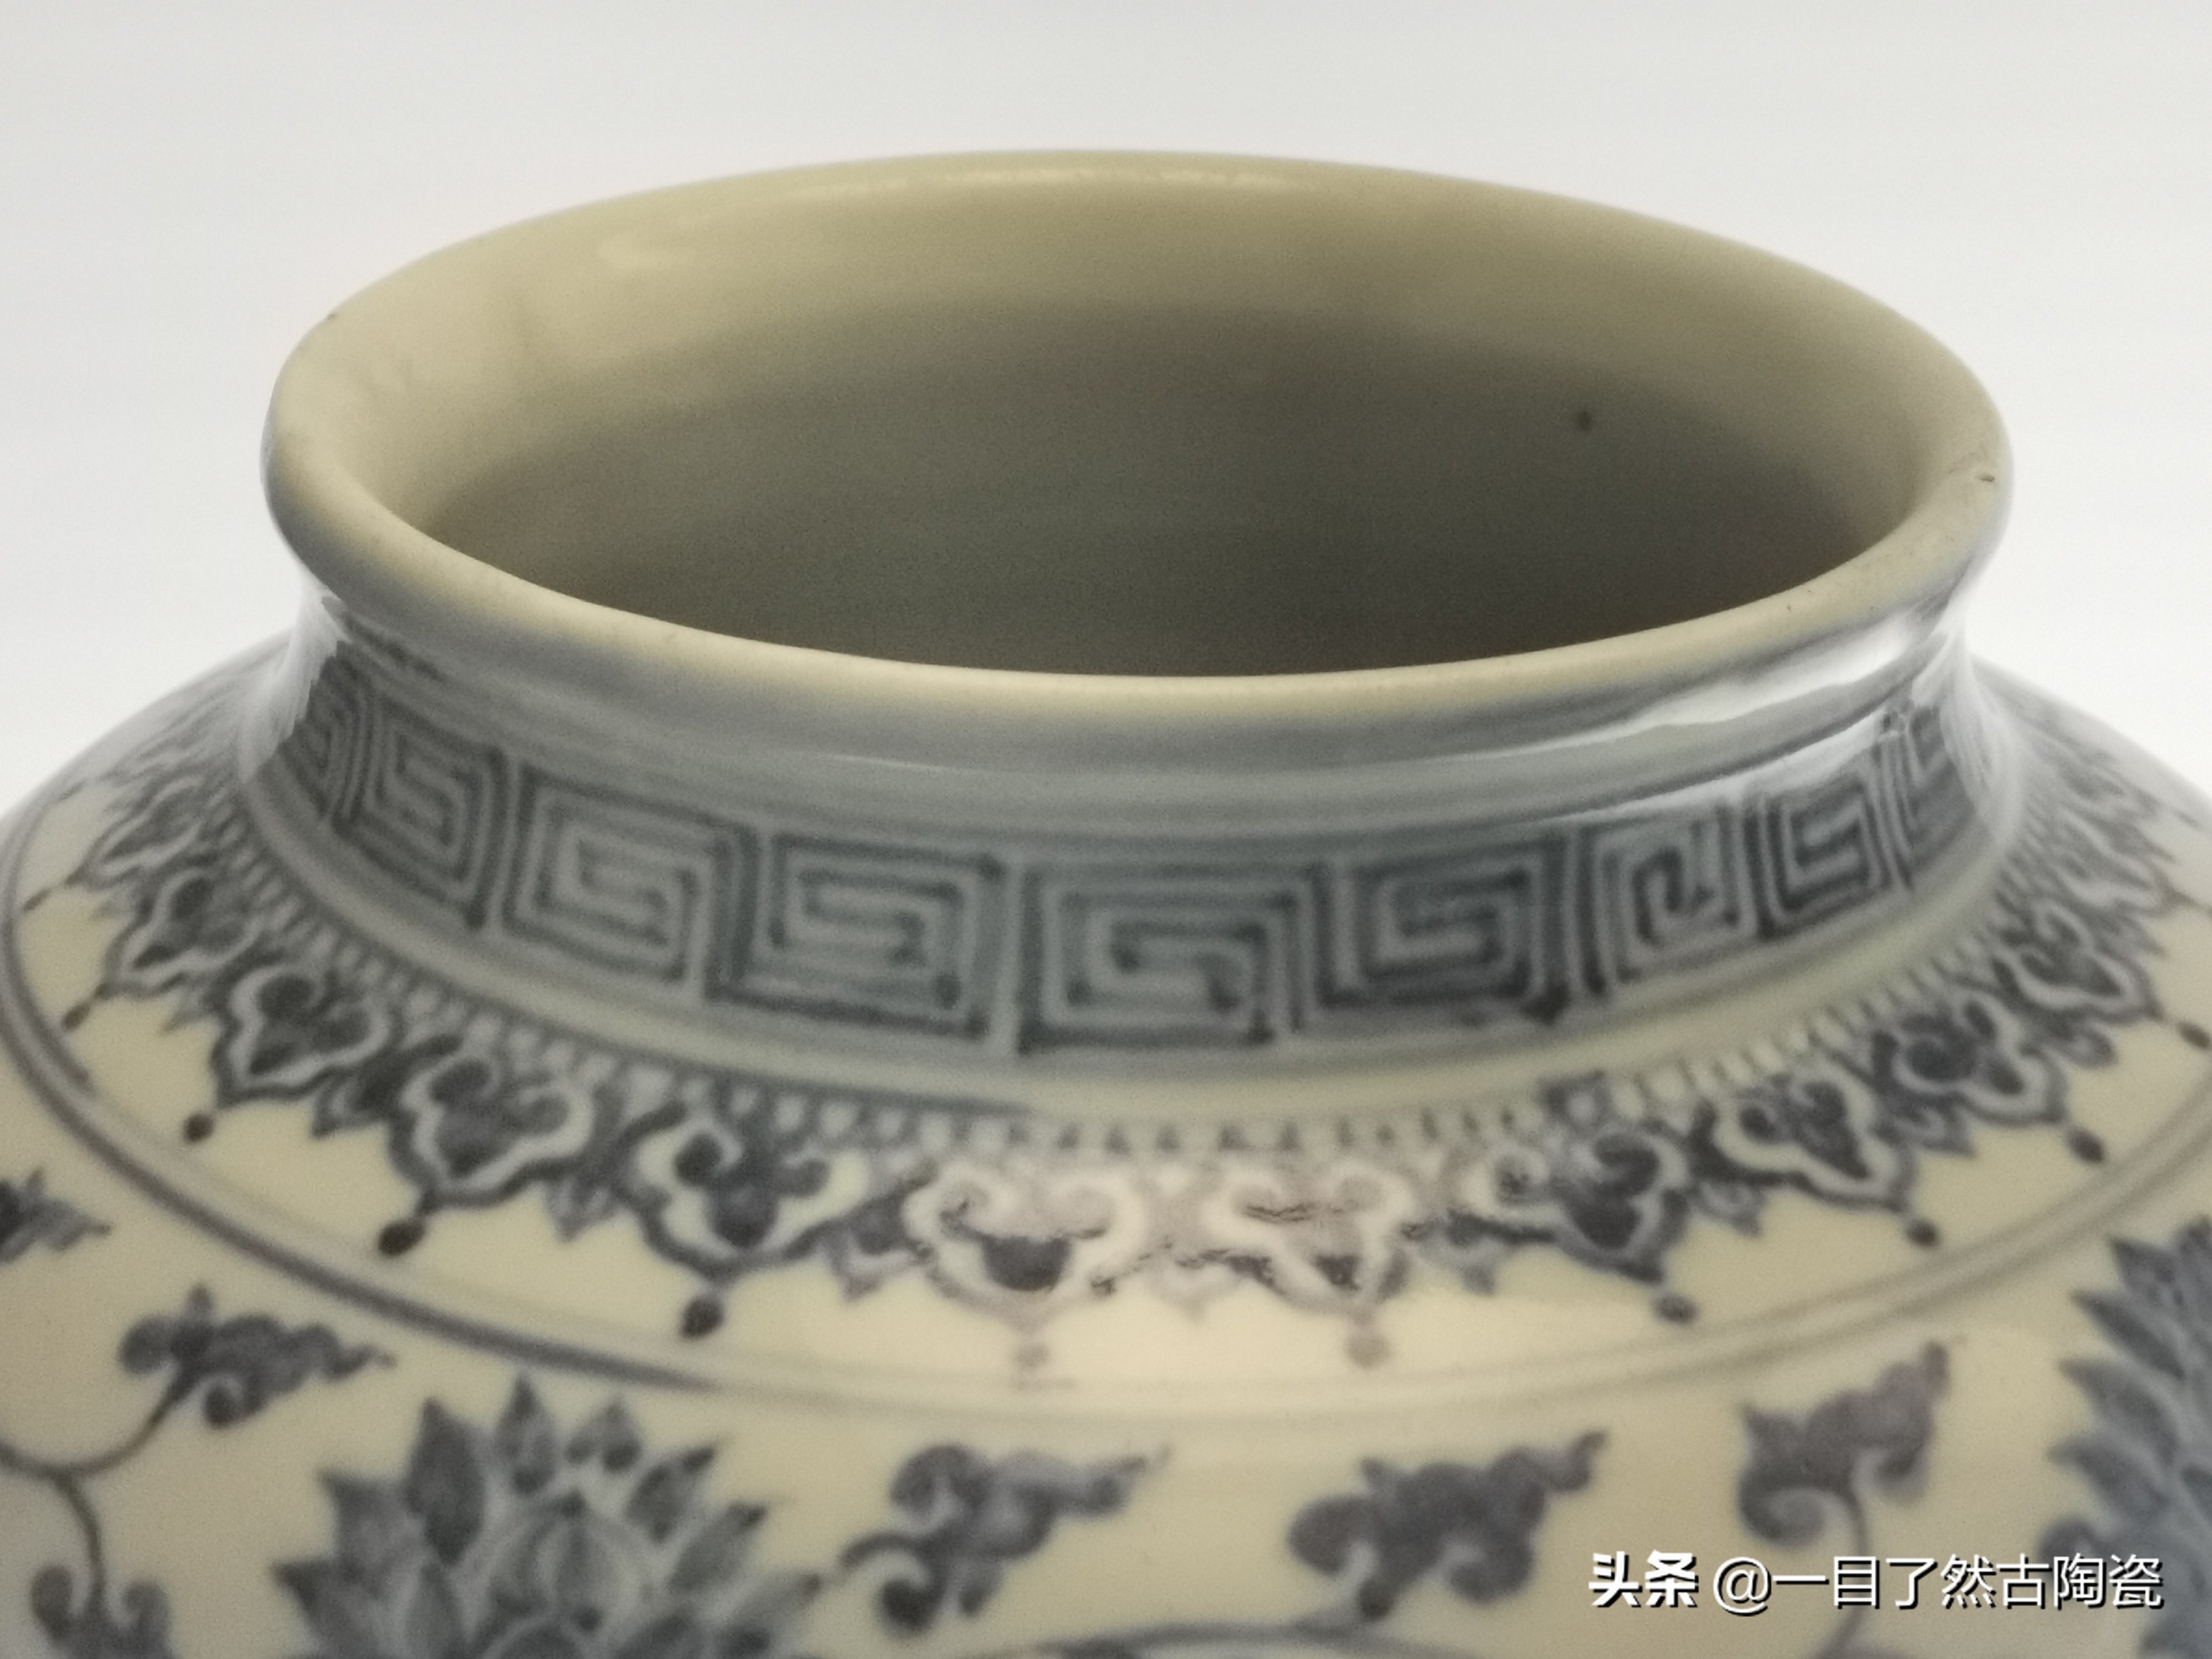 127张图在线观赏：天津博物馆藏古代陶瓷1:明清青花瓷（1）